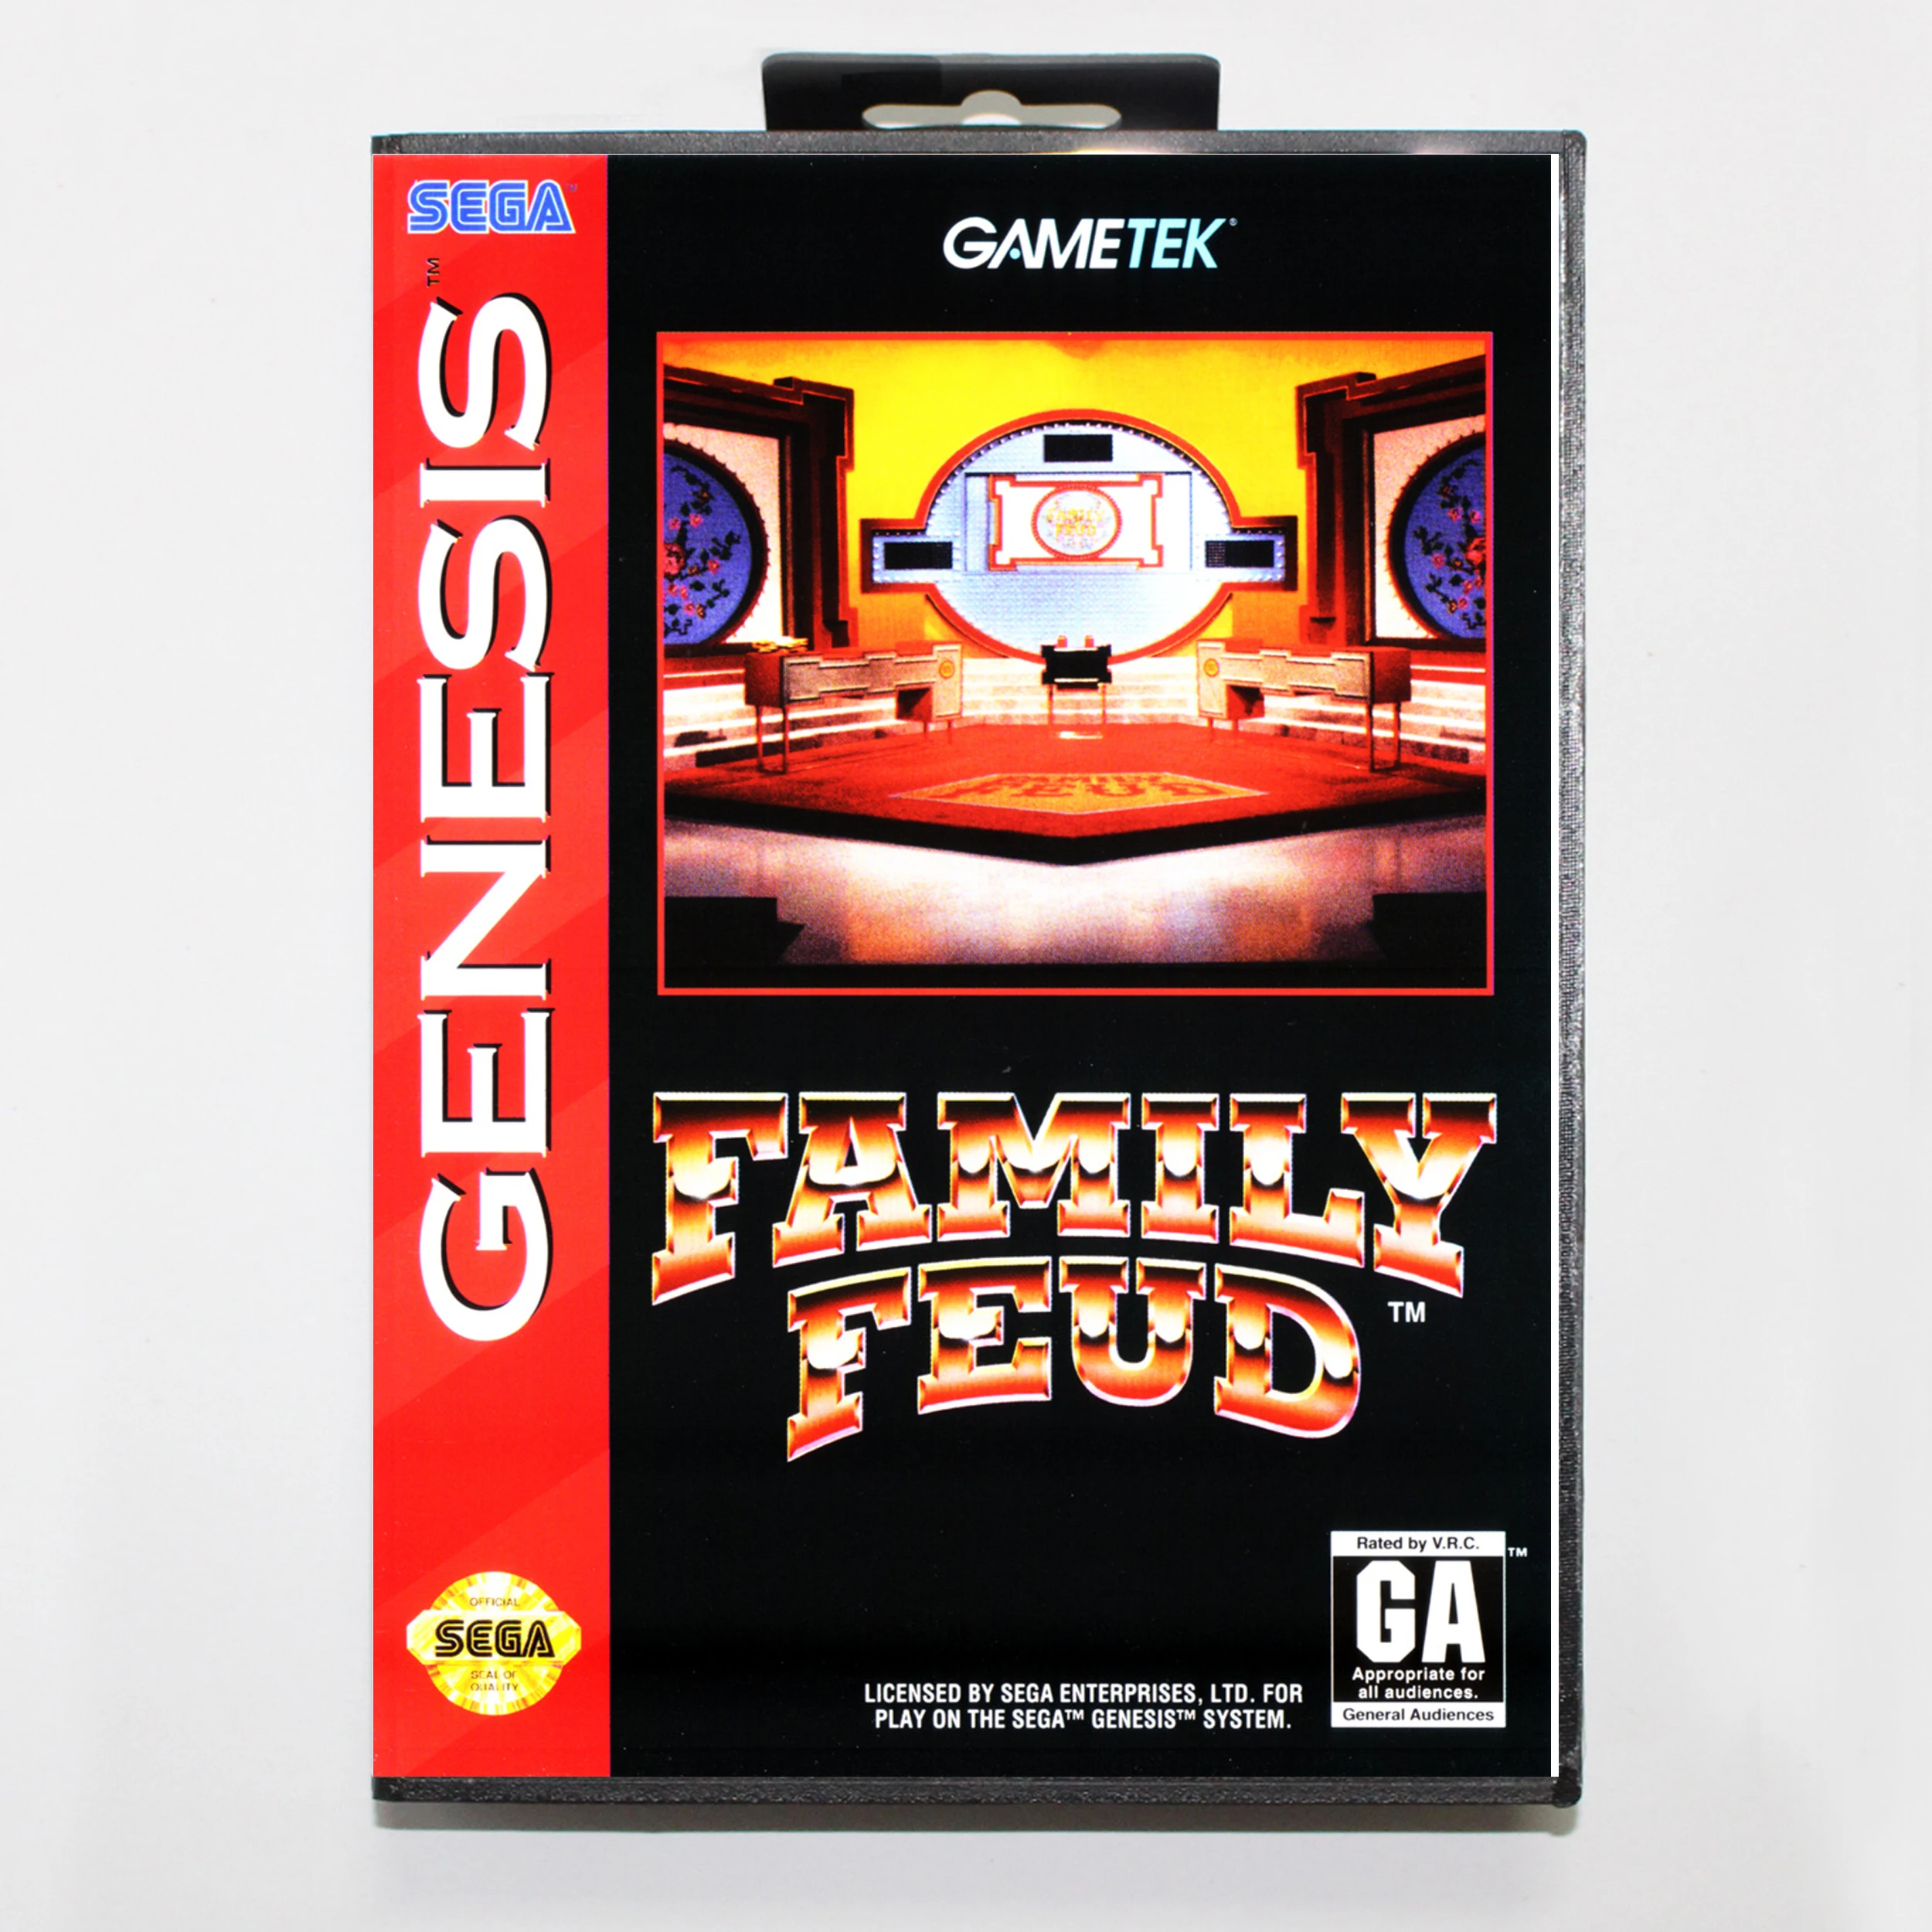 

Семейный врач с розничной коробкой, 16-битная игровая карта MD для Sega Mega Drive/ Genesis